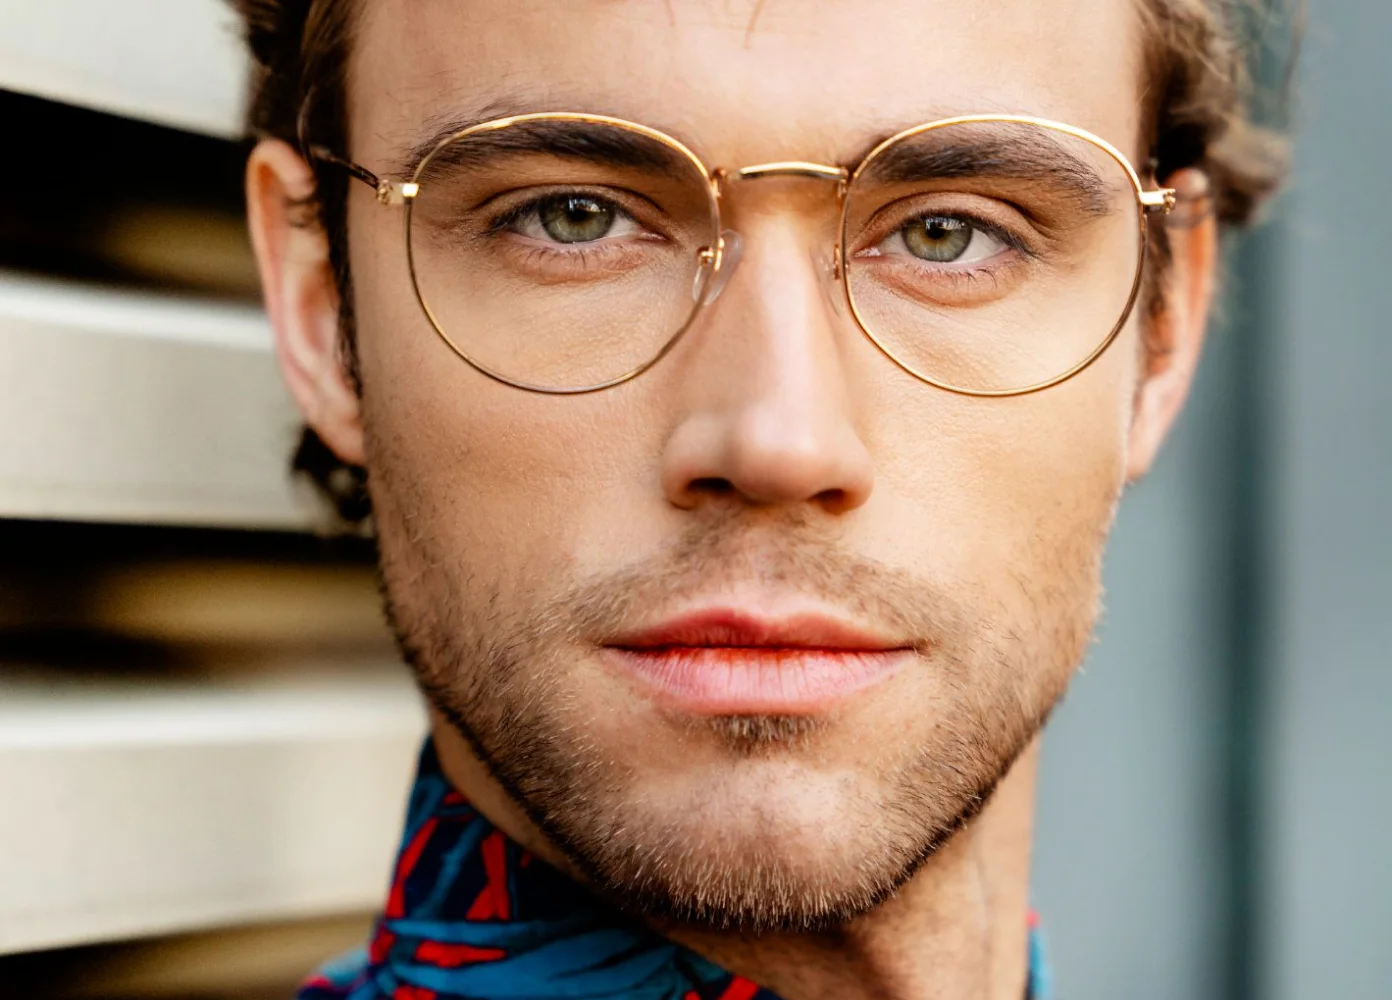 Ein männliches Model mit goldener Brille, grünen Augen und buntem Hemd schaut in die Kamera